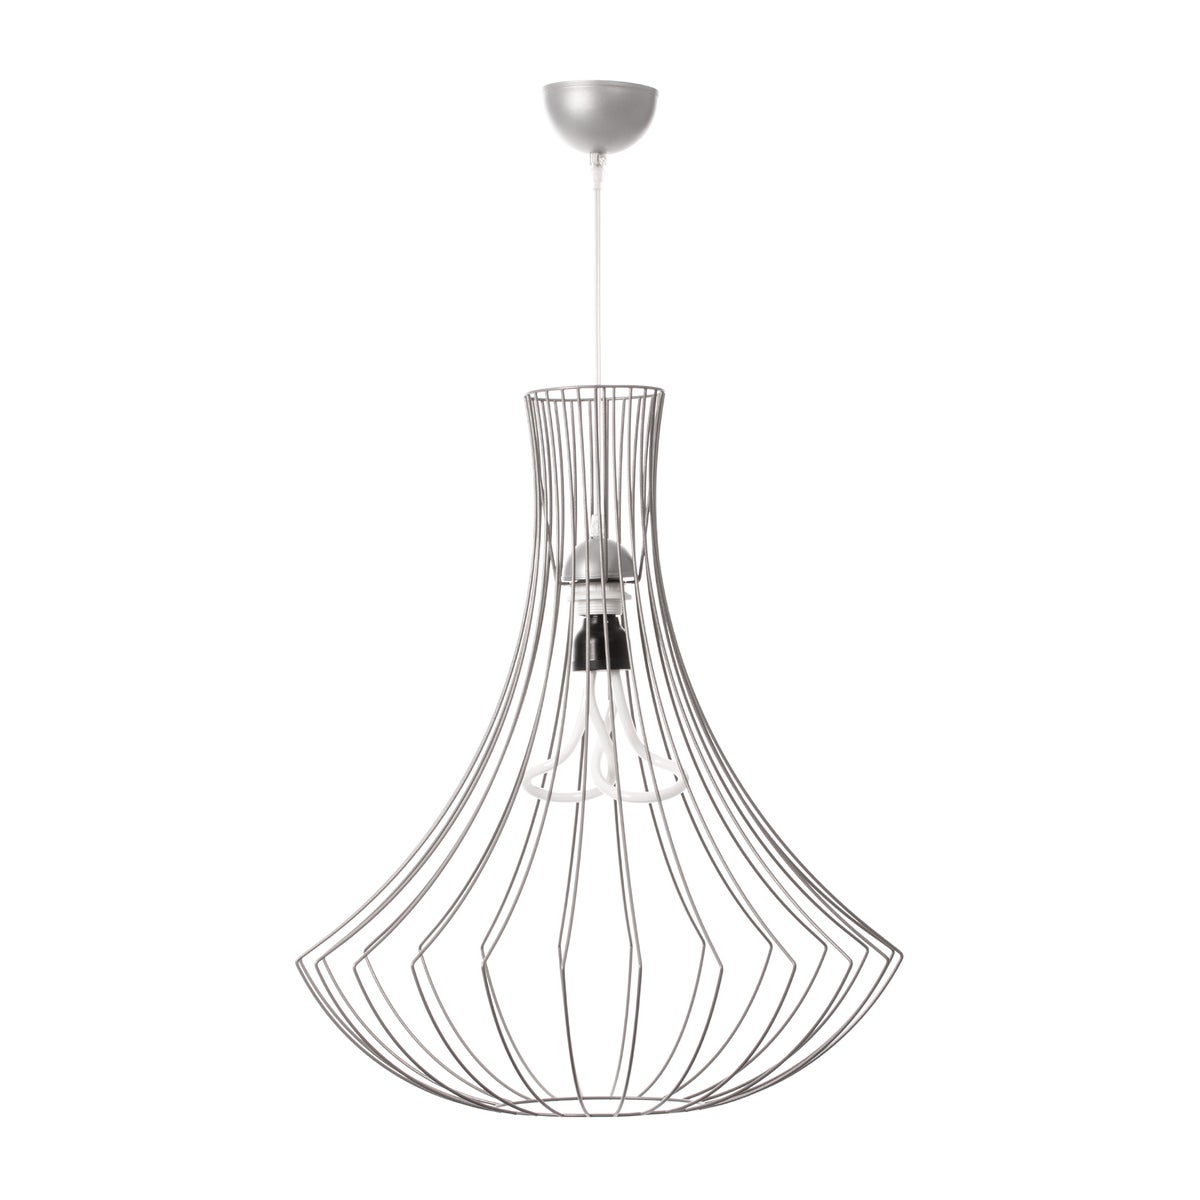 Moderne skandinavische Designlampe Hängelampe in Silber 60 cm | Wohnzimmer Esszimmer Leuchte